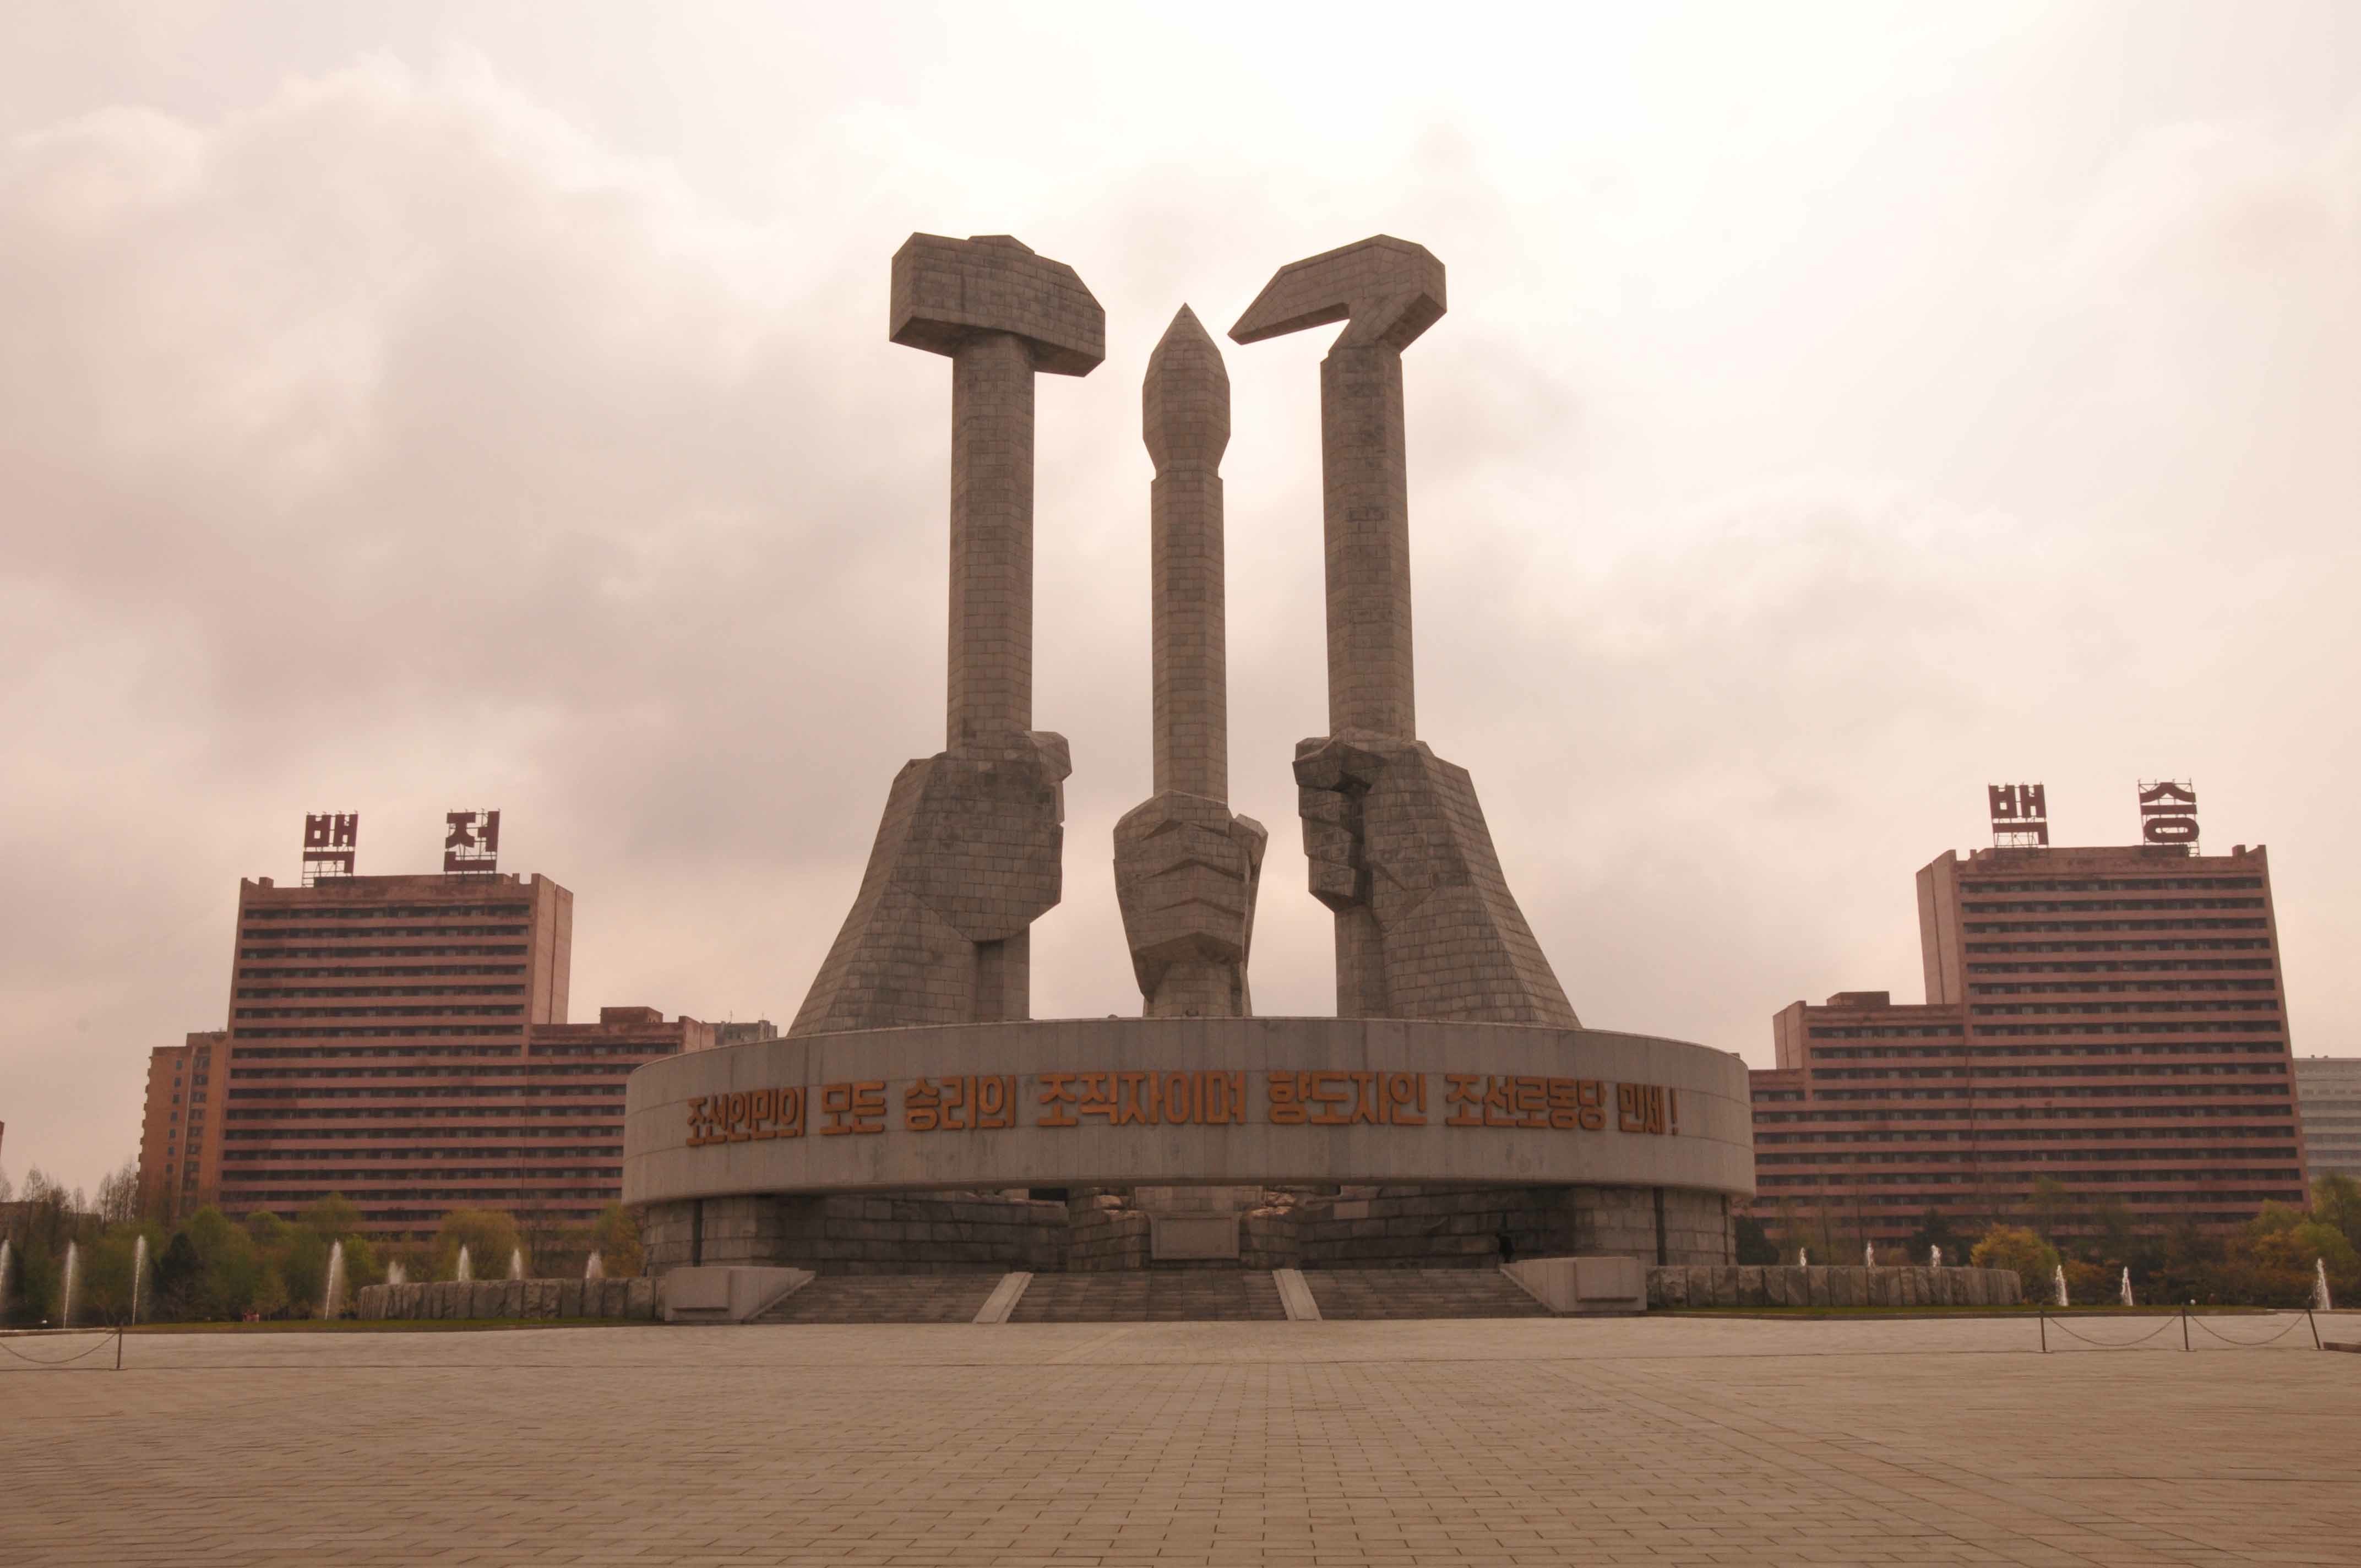 World of War and Peace REBIRTH - Página 21 5-monumento-en-honor-del-partido-comunista-coreano-martillo-hoz-y-cincel-empuc3b1ados-los-sc3admbolos-del-pcc-pyongyang-copia